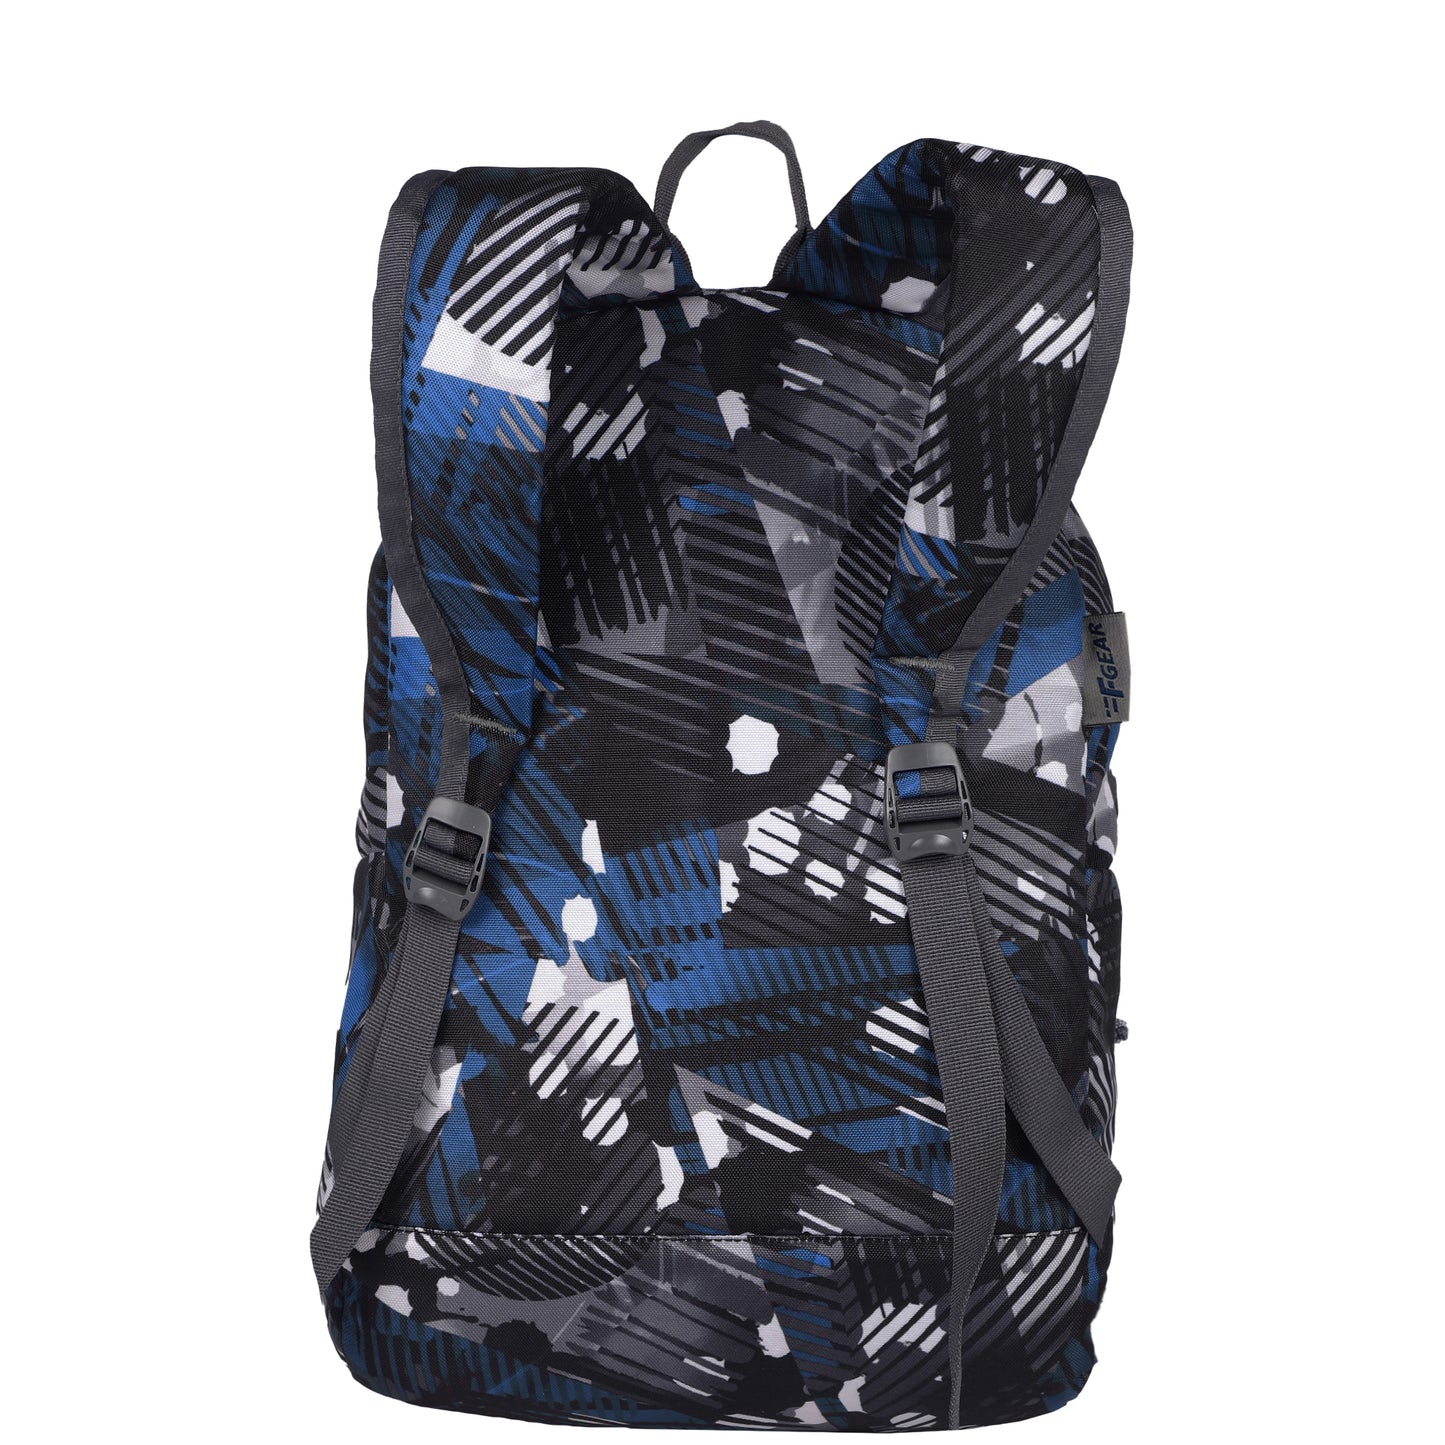 Ferris Geometric Blue Black Backpack